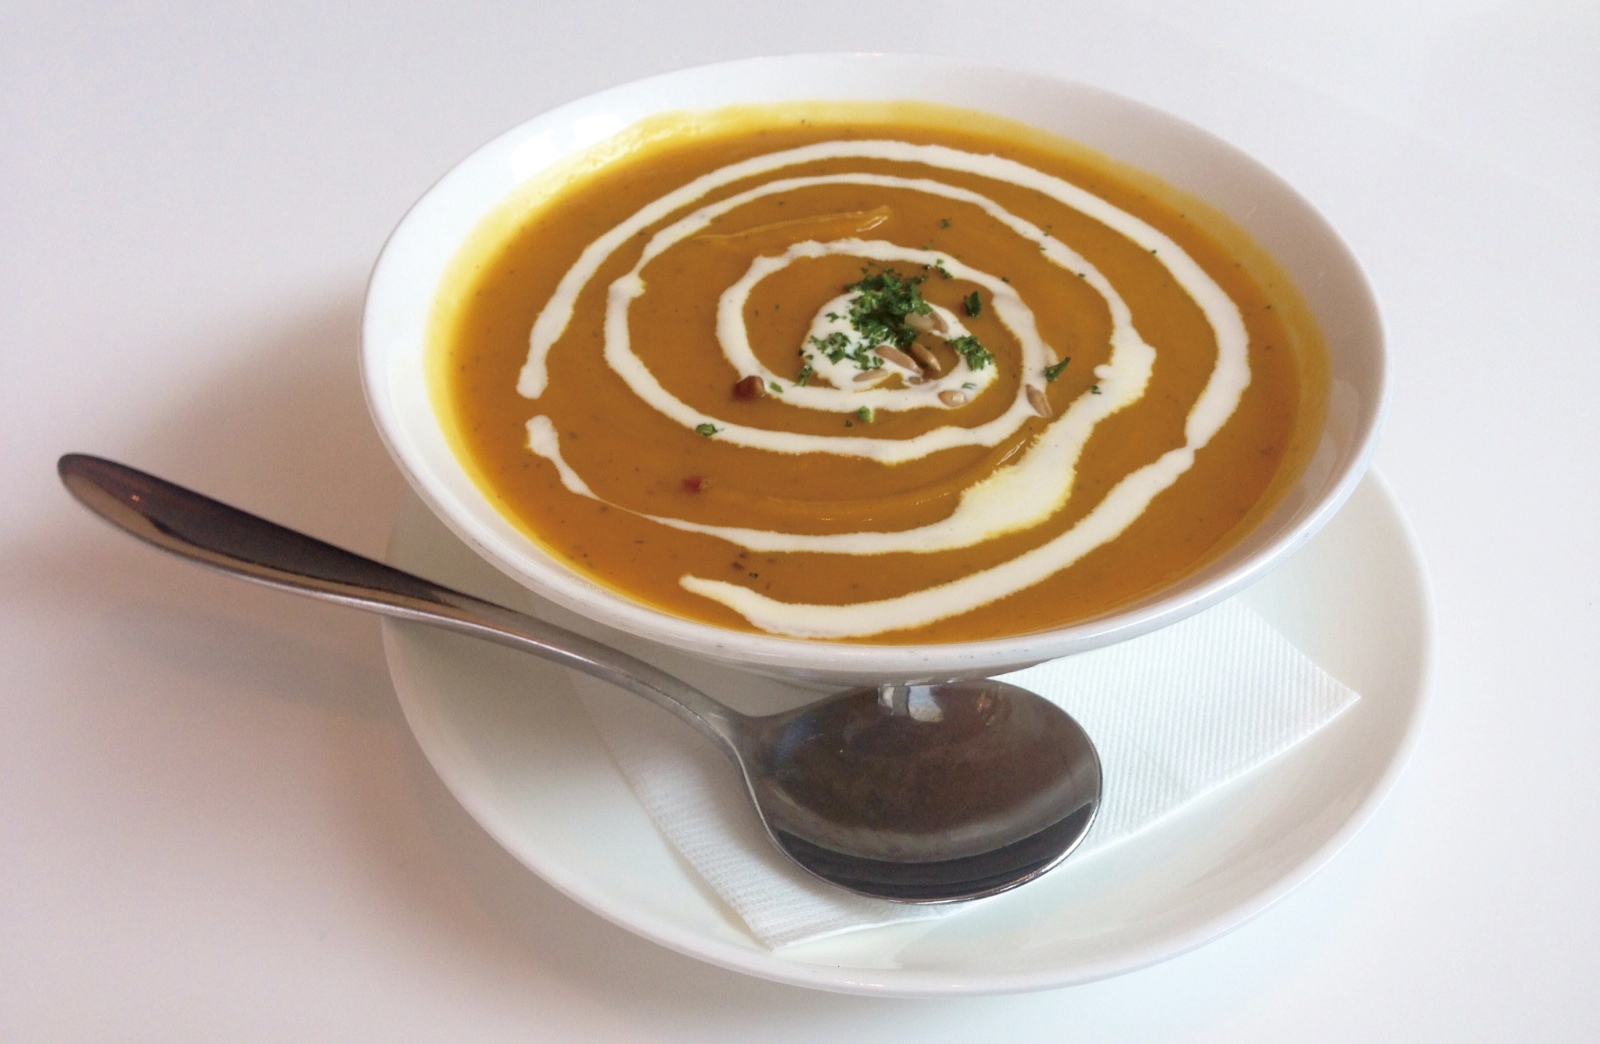 Creamy, hot pumpkin soup.